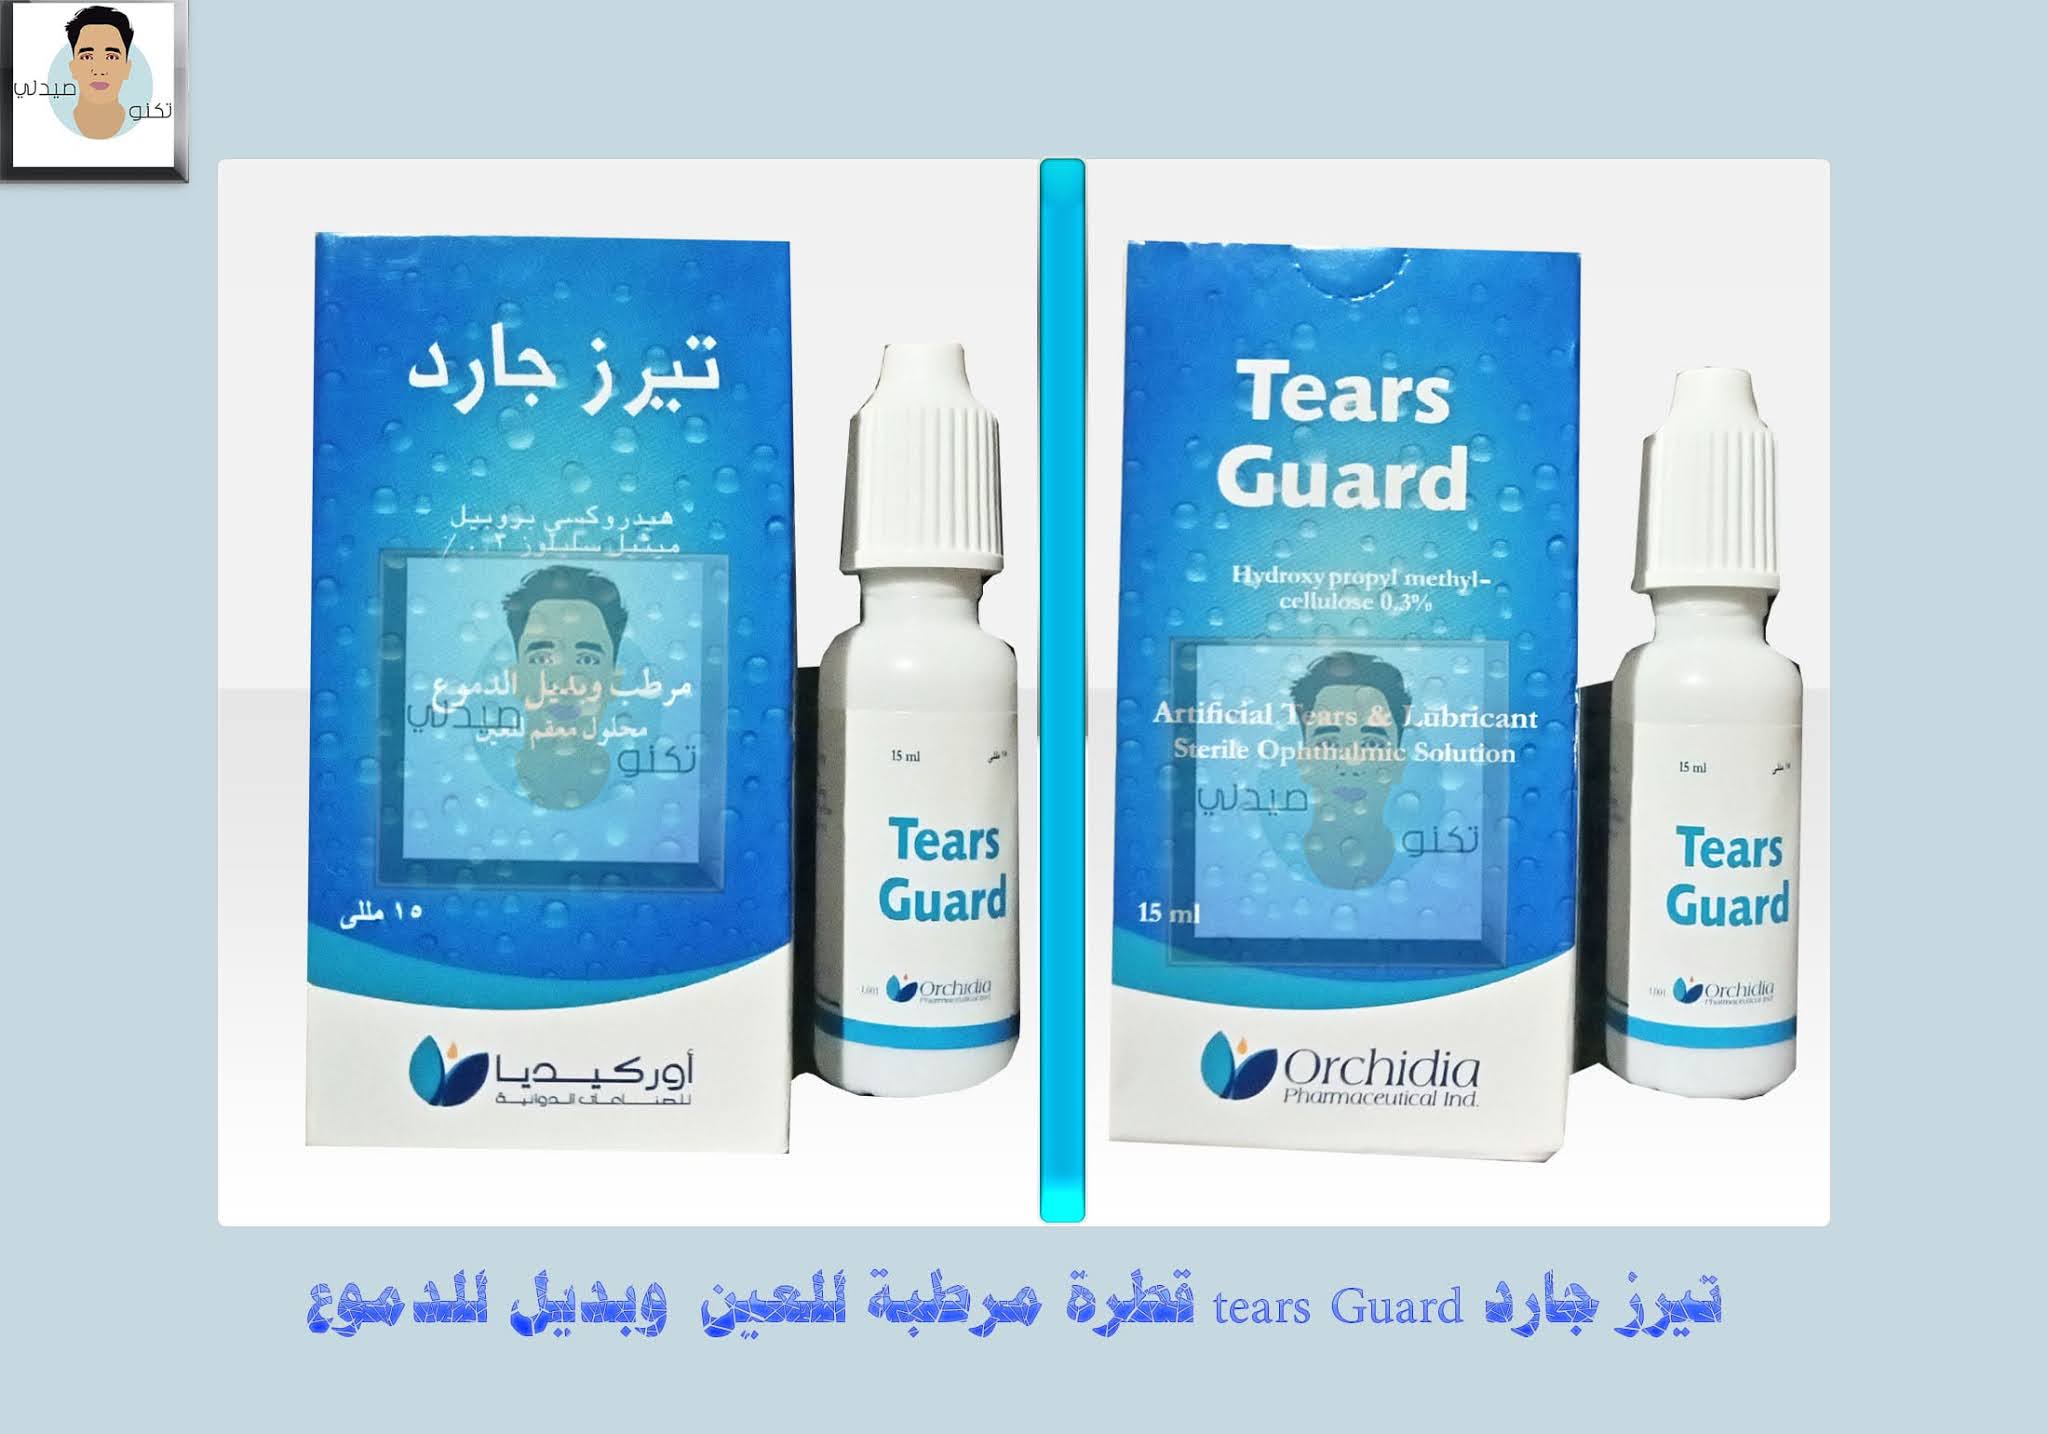 تيرز جارد tears Guard | قطرة مرطبة للعين تعالج الحرقان وبديل الدموع